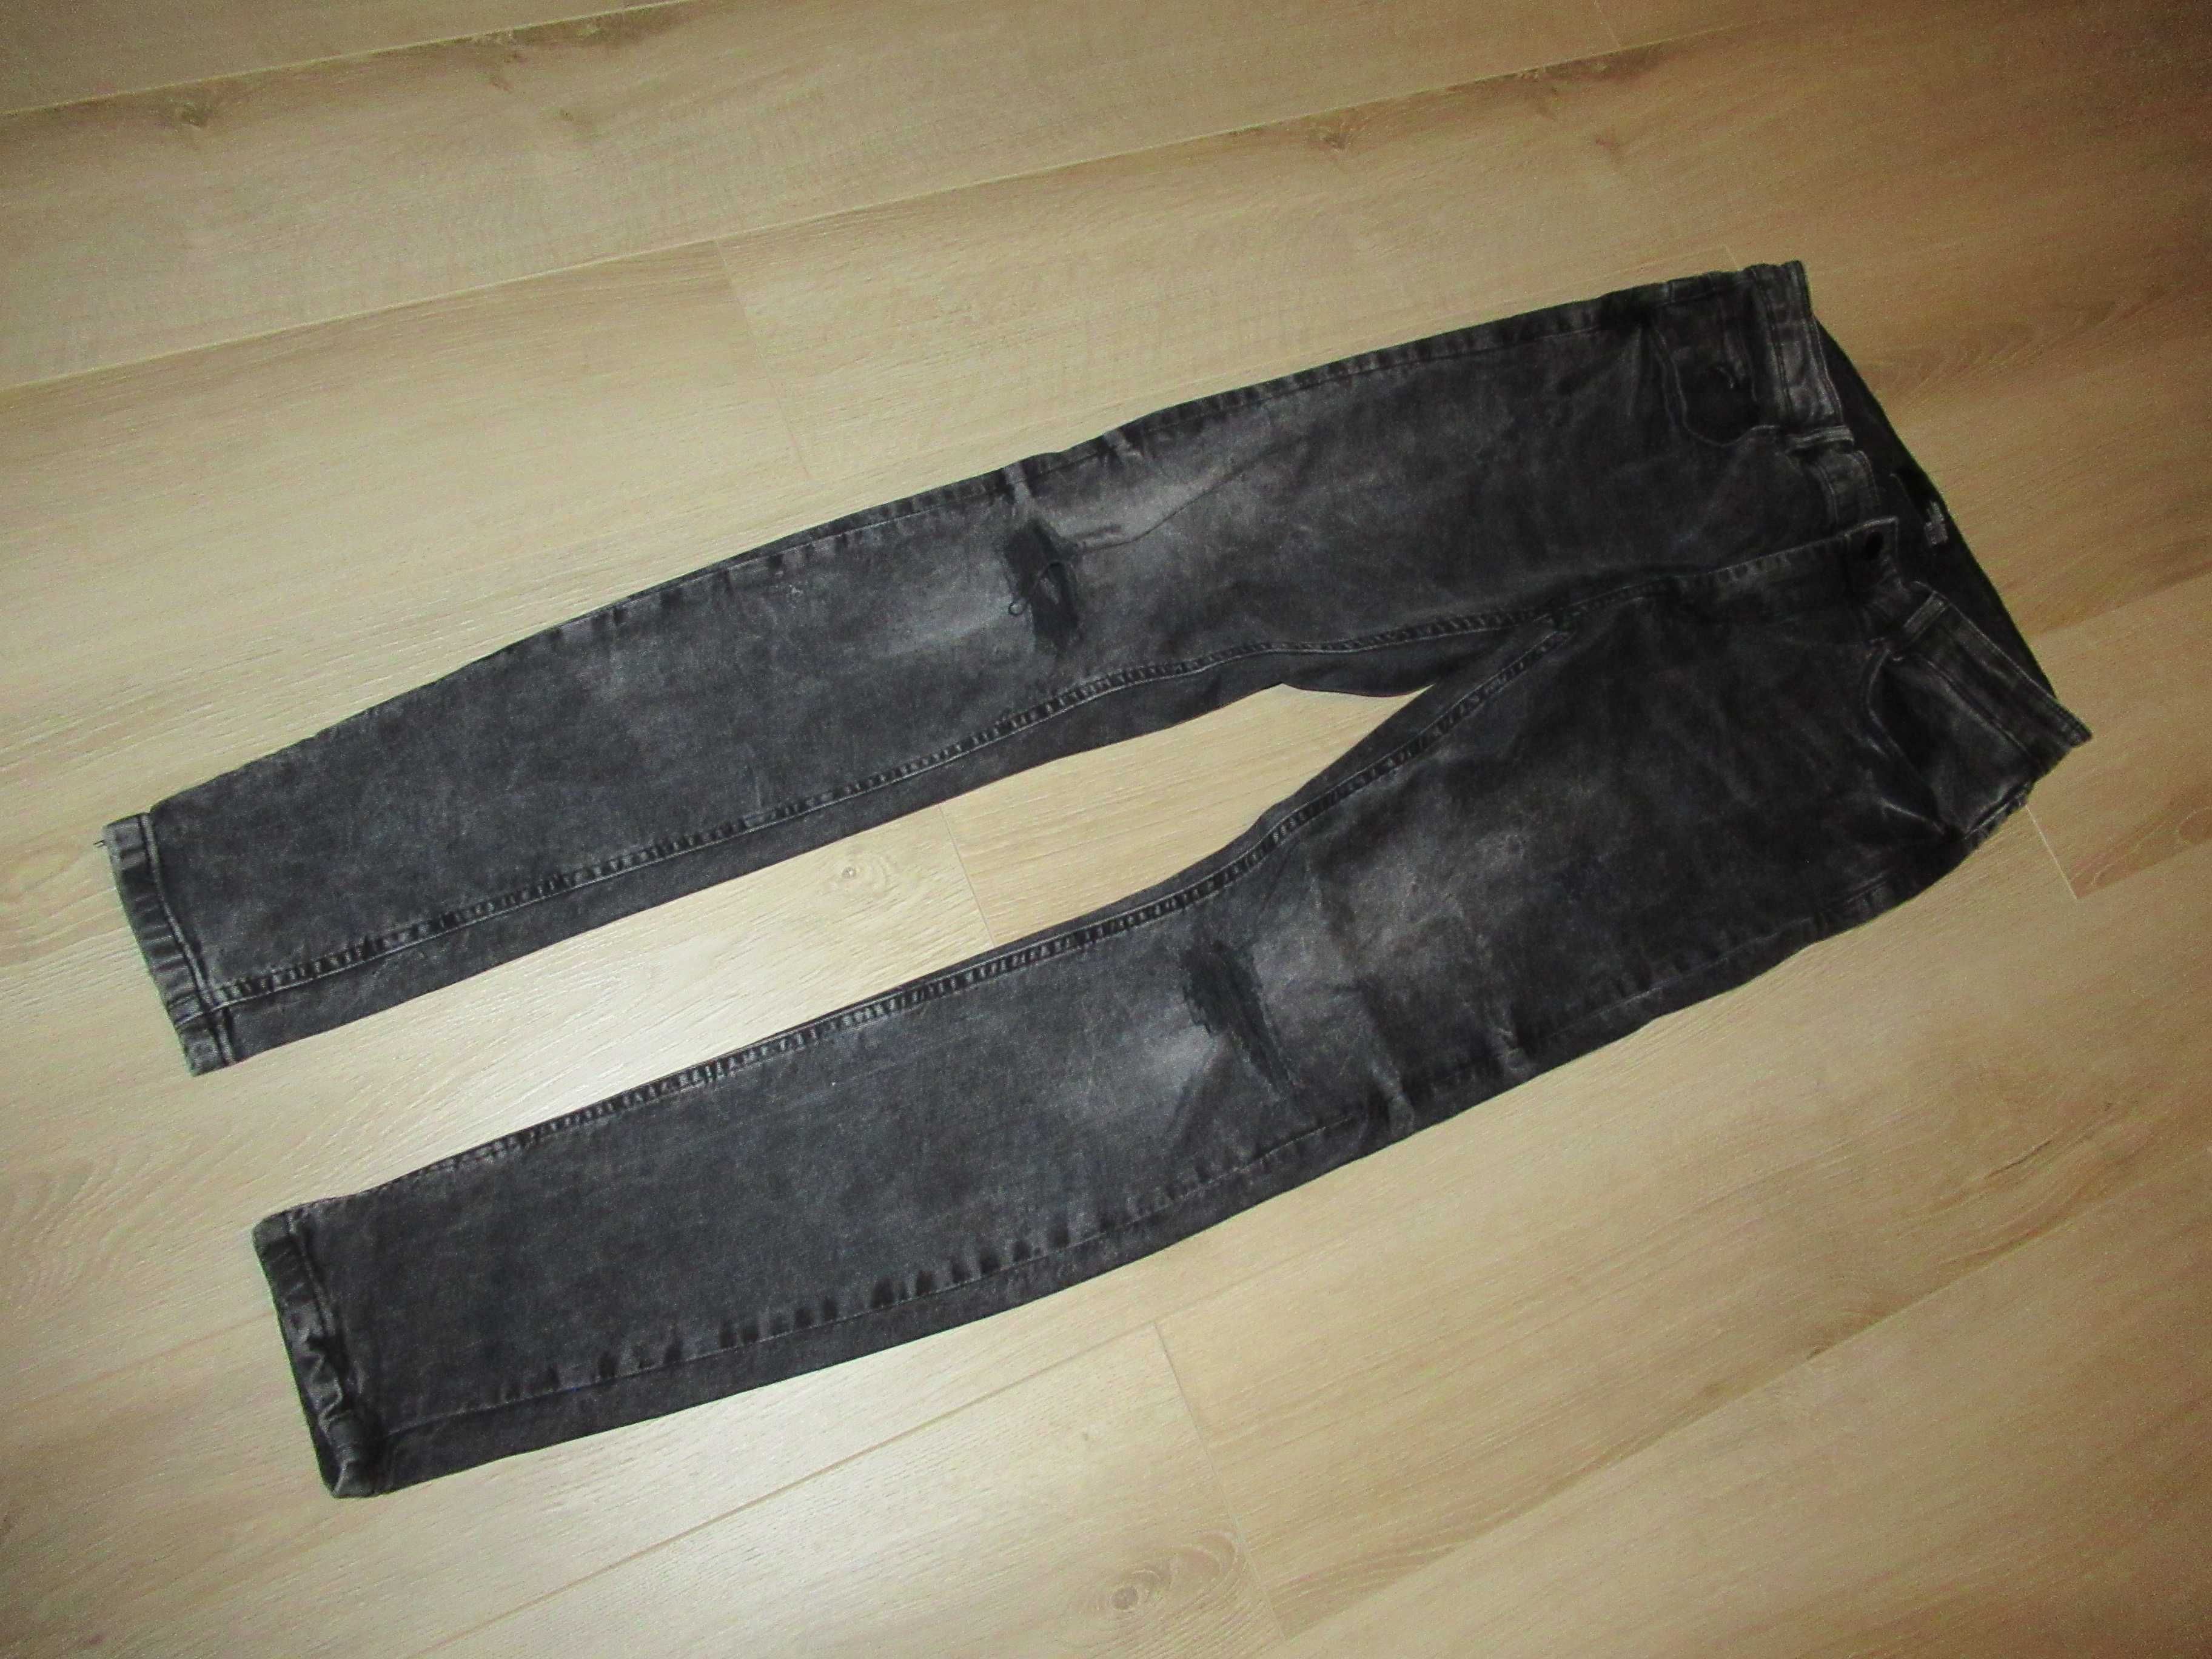 House jeansy skinny fit z przetarciami czarne 30/32